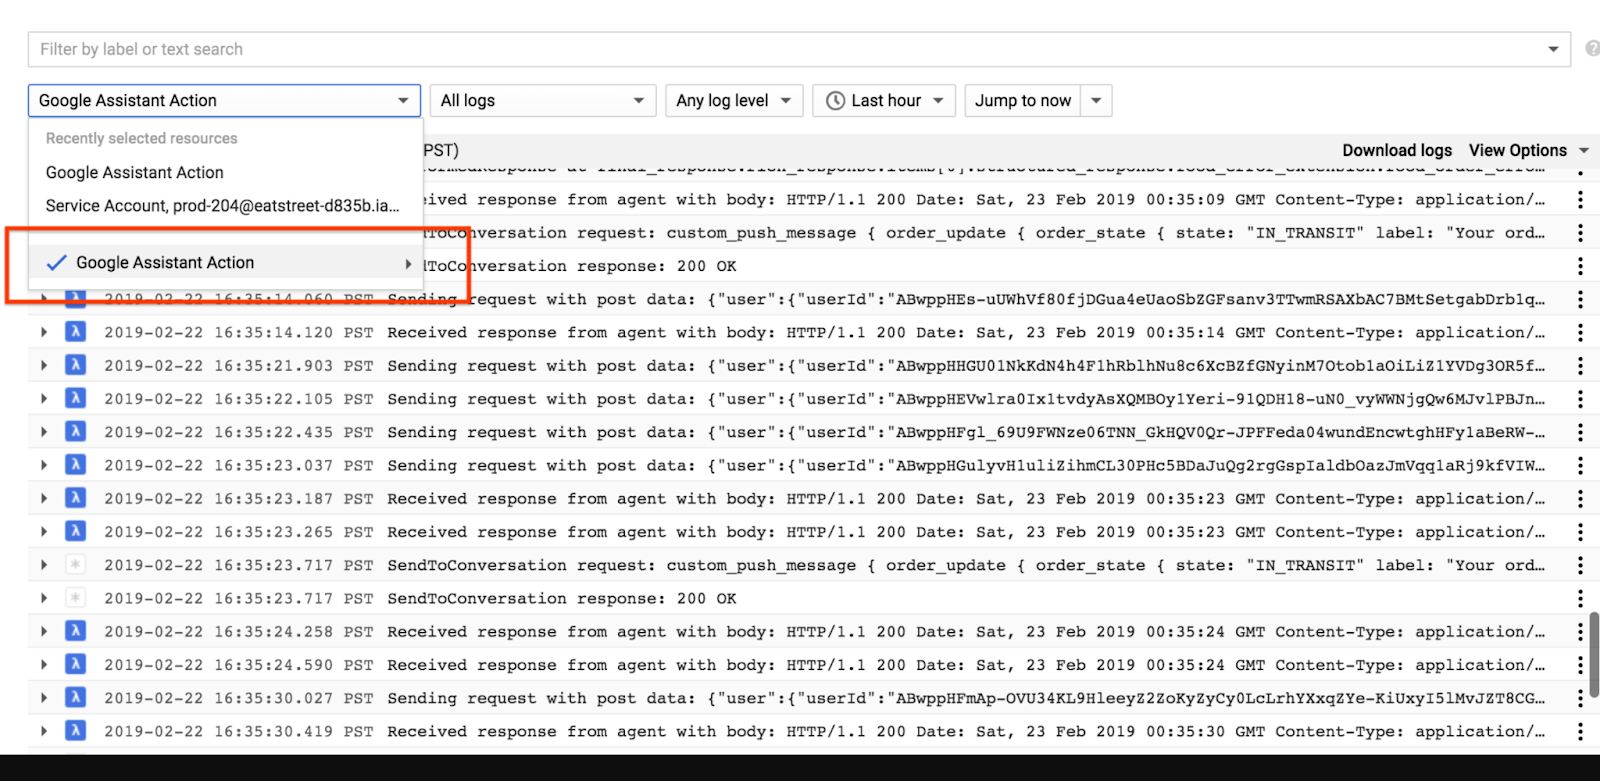 registros de Stackdriver, que muestran la acción del Asistente de Google como recurso seleccionado.